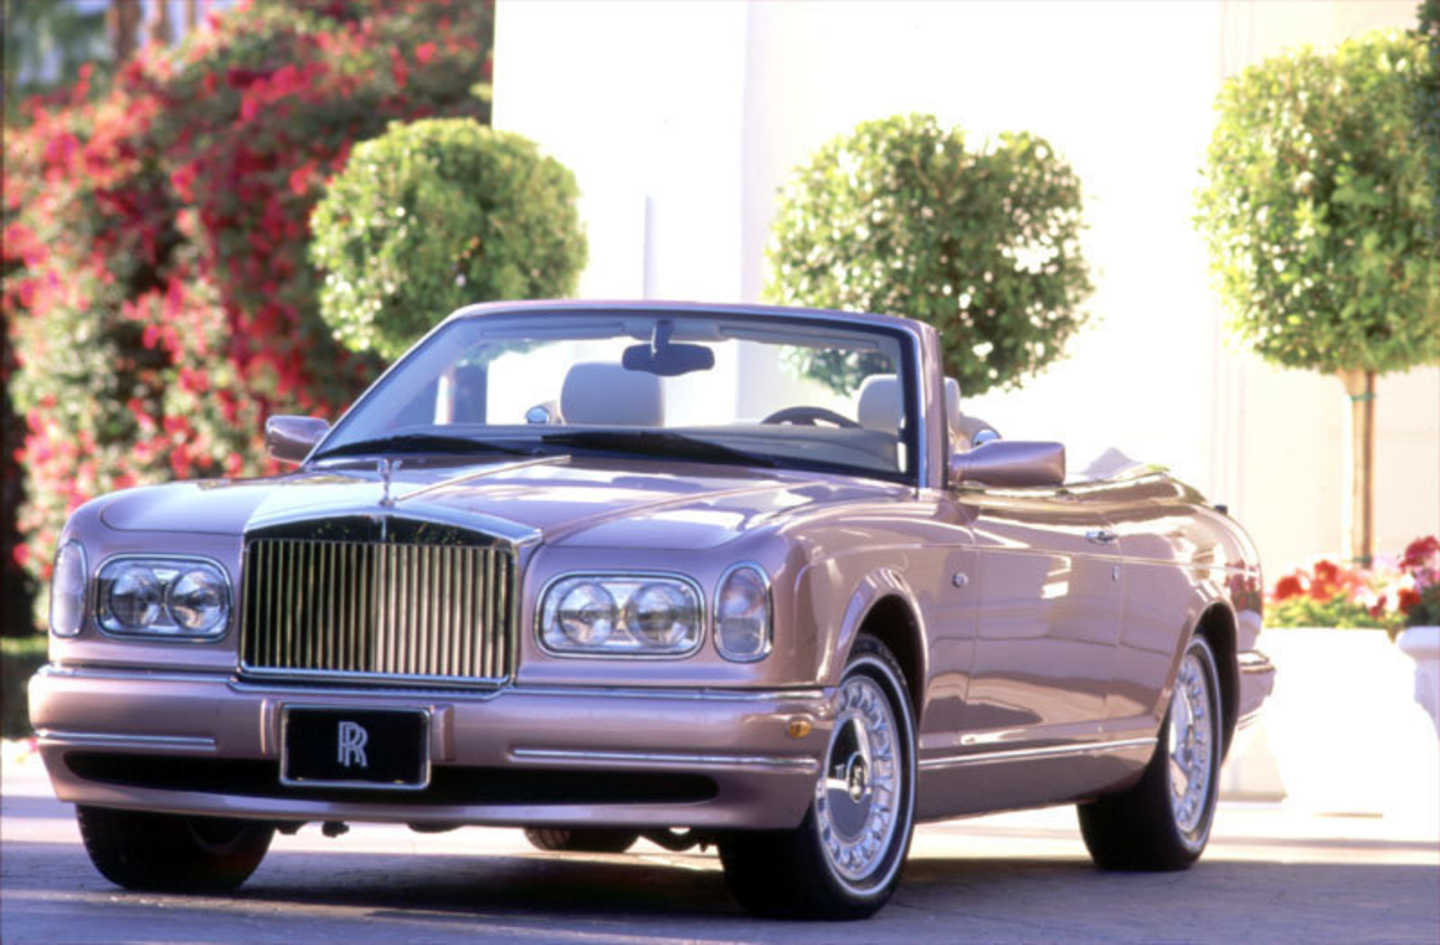 La Corniche de 2000, seule Rolls Royce dérivée d'une Bentley.